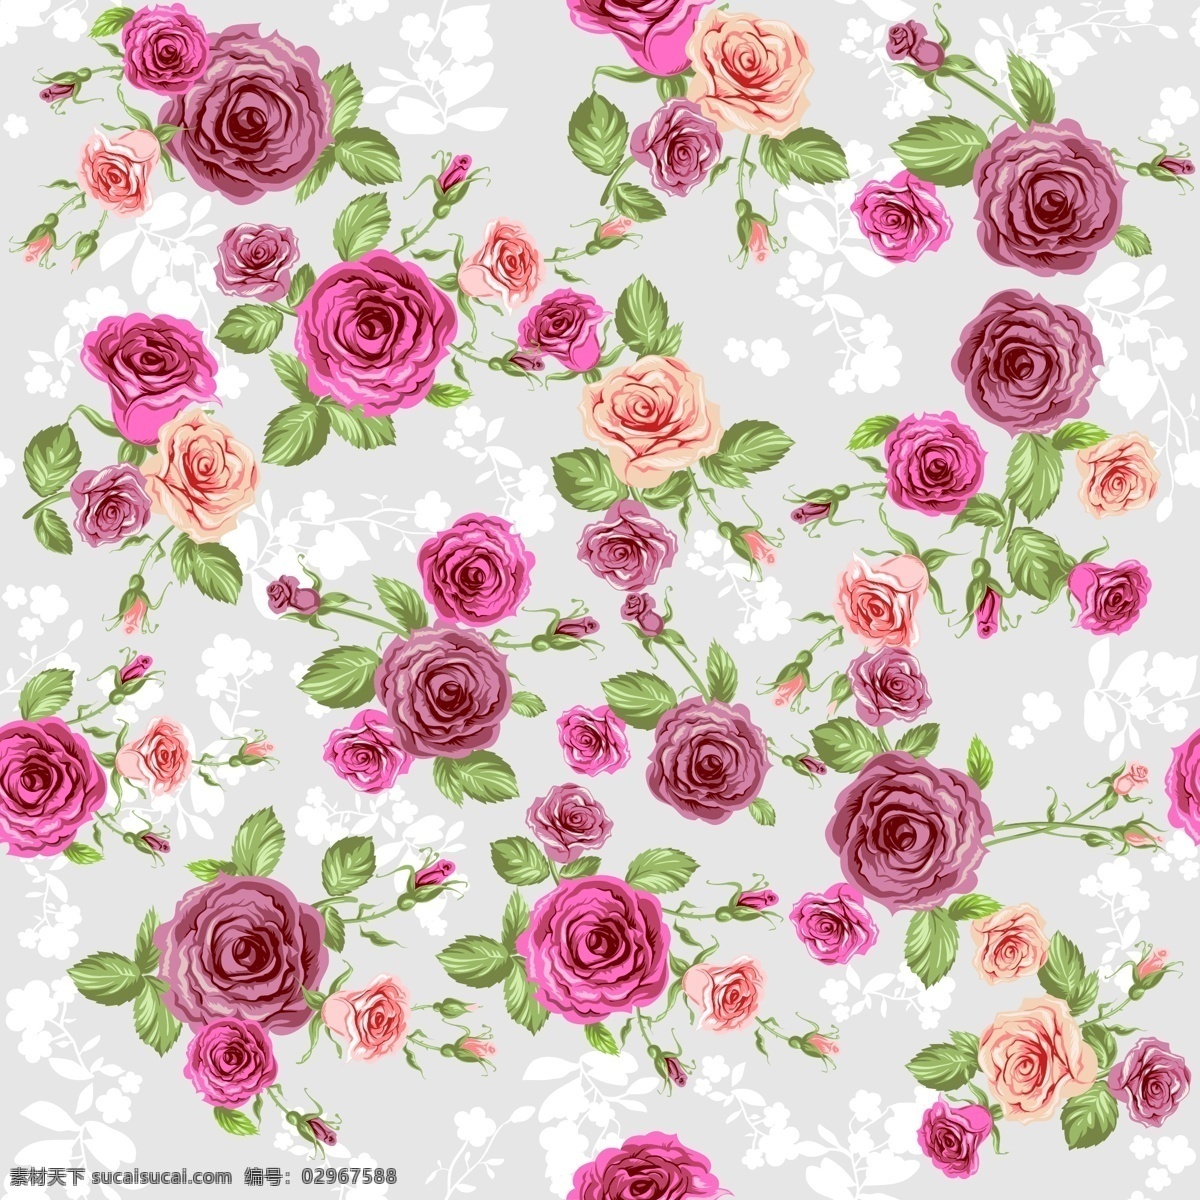 玫瑰 花卉 背景图片 水彩 玫瑰花 植物 花束 无缝背景 矢量 高清图片